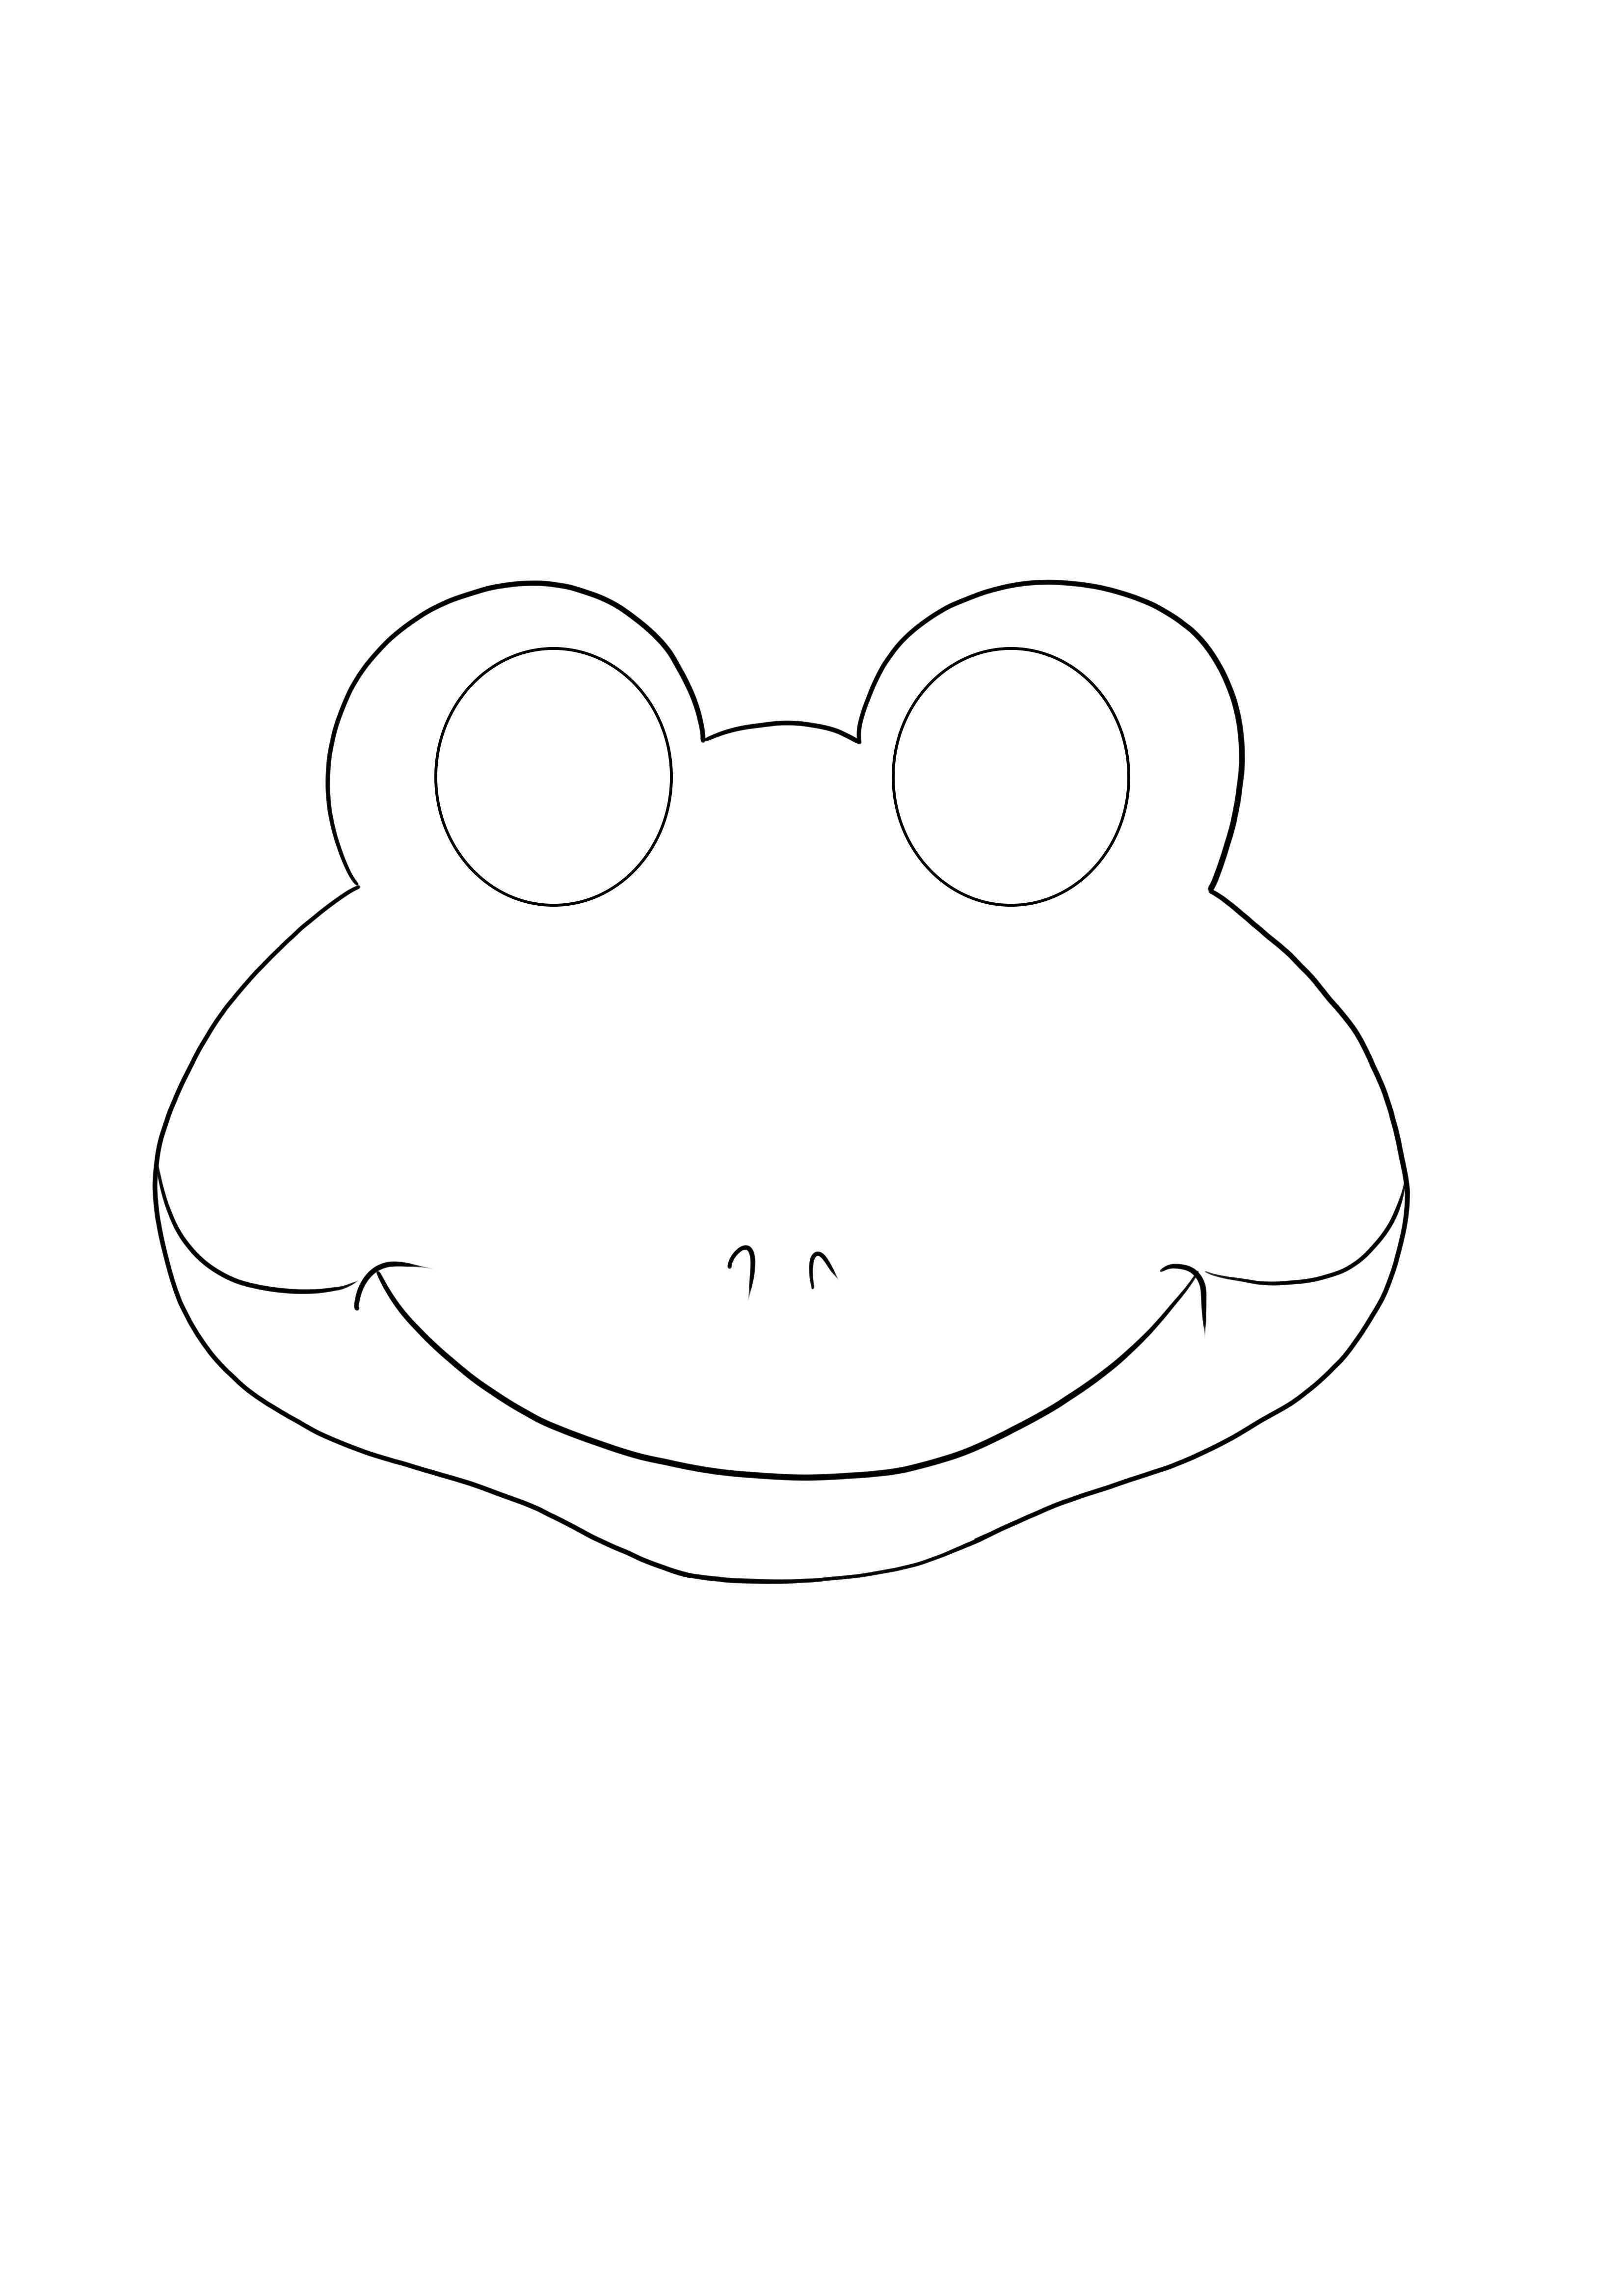 Máscara de rana simple para colorear e imprimir gratis para niños